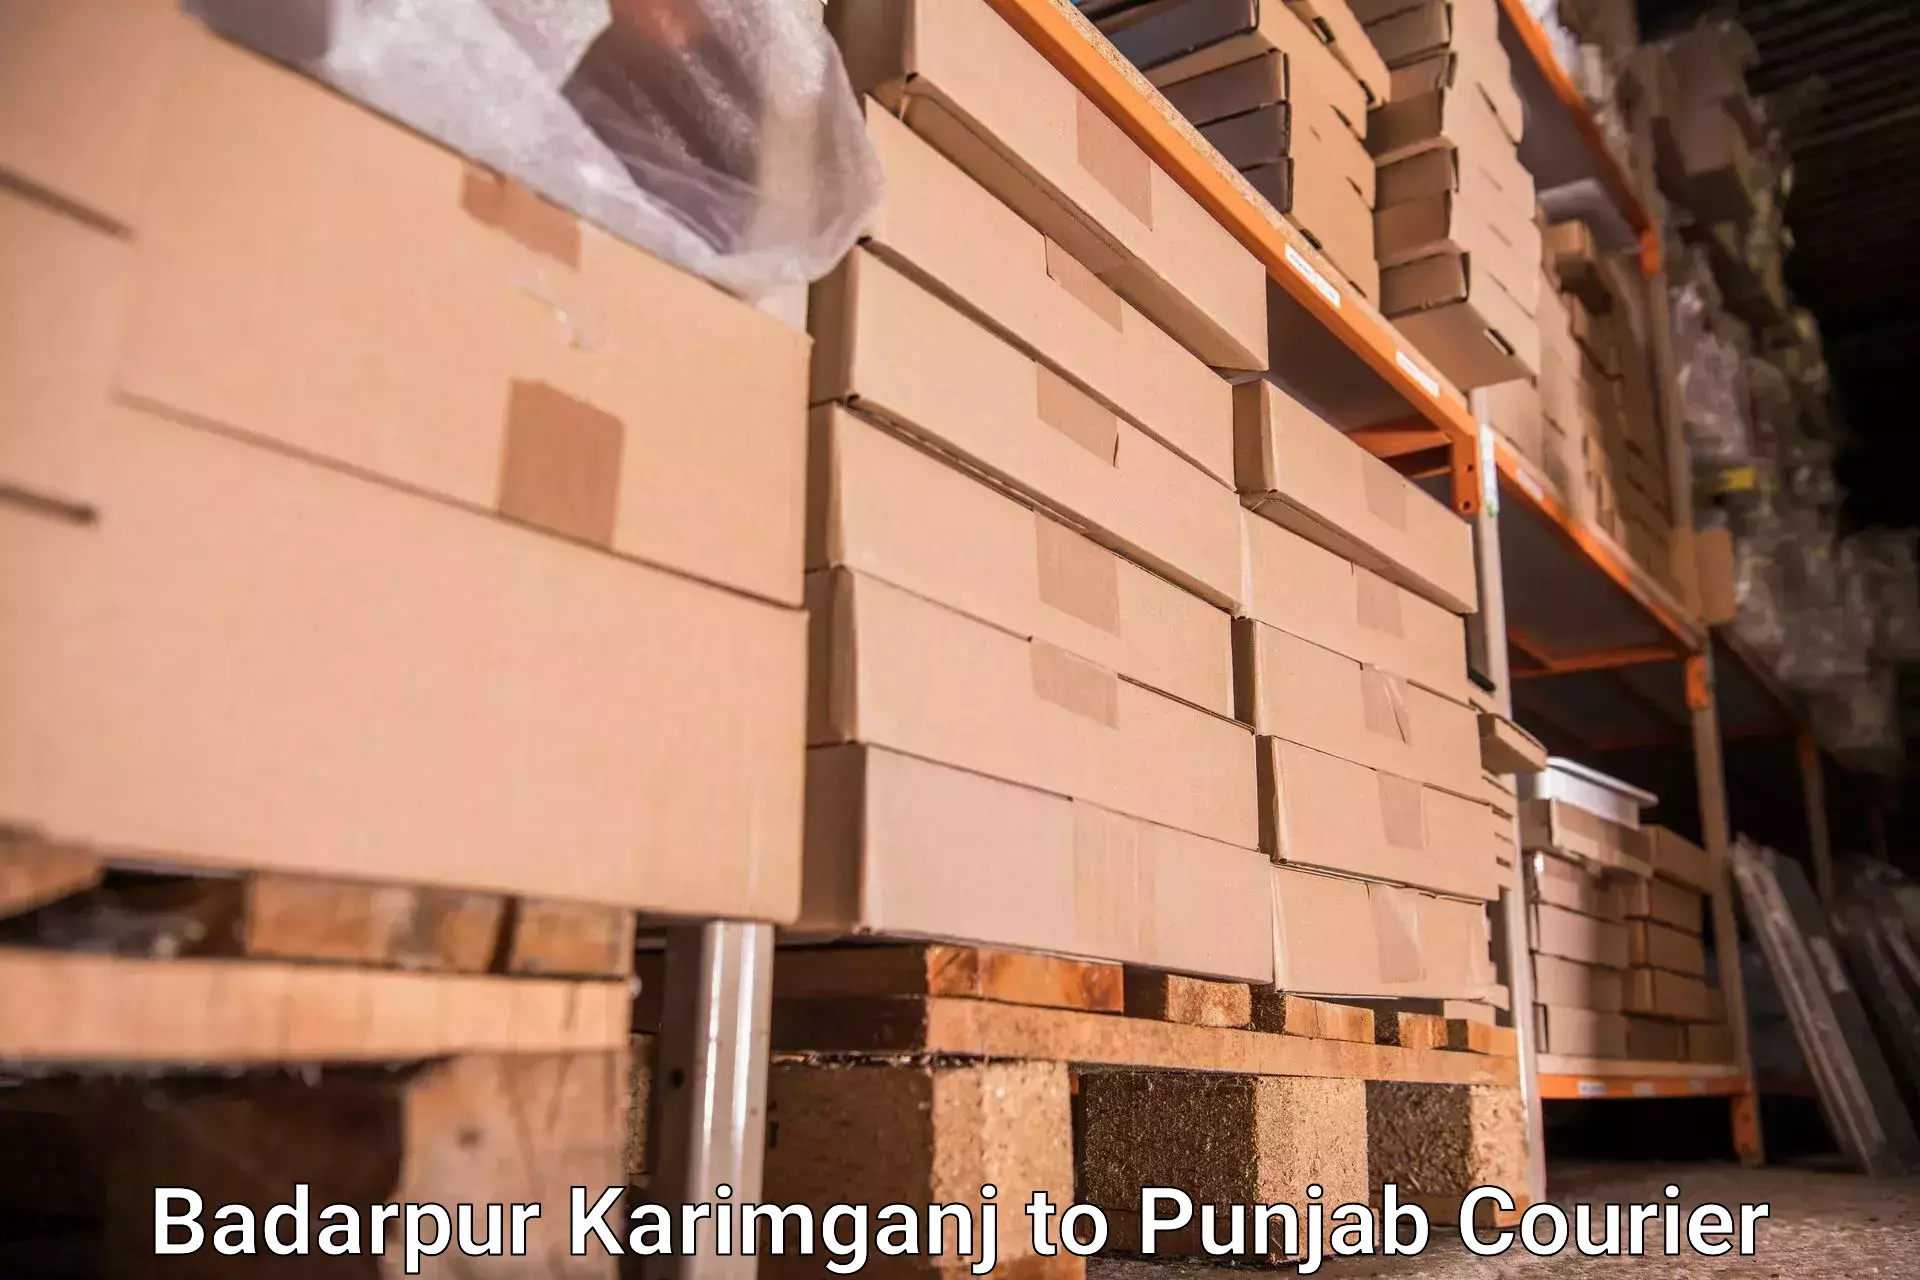 Baggage transport cost Badarpur Karimganj to Punjab